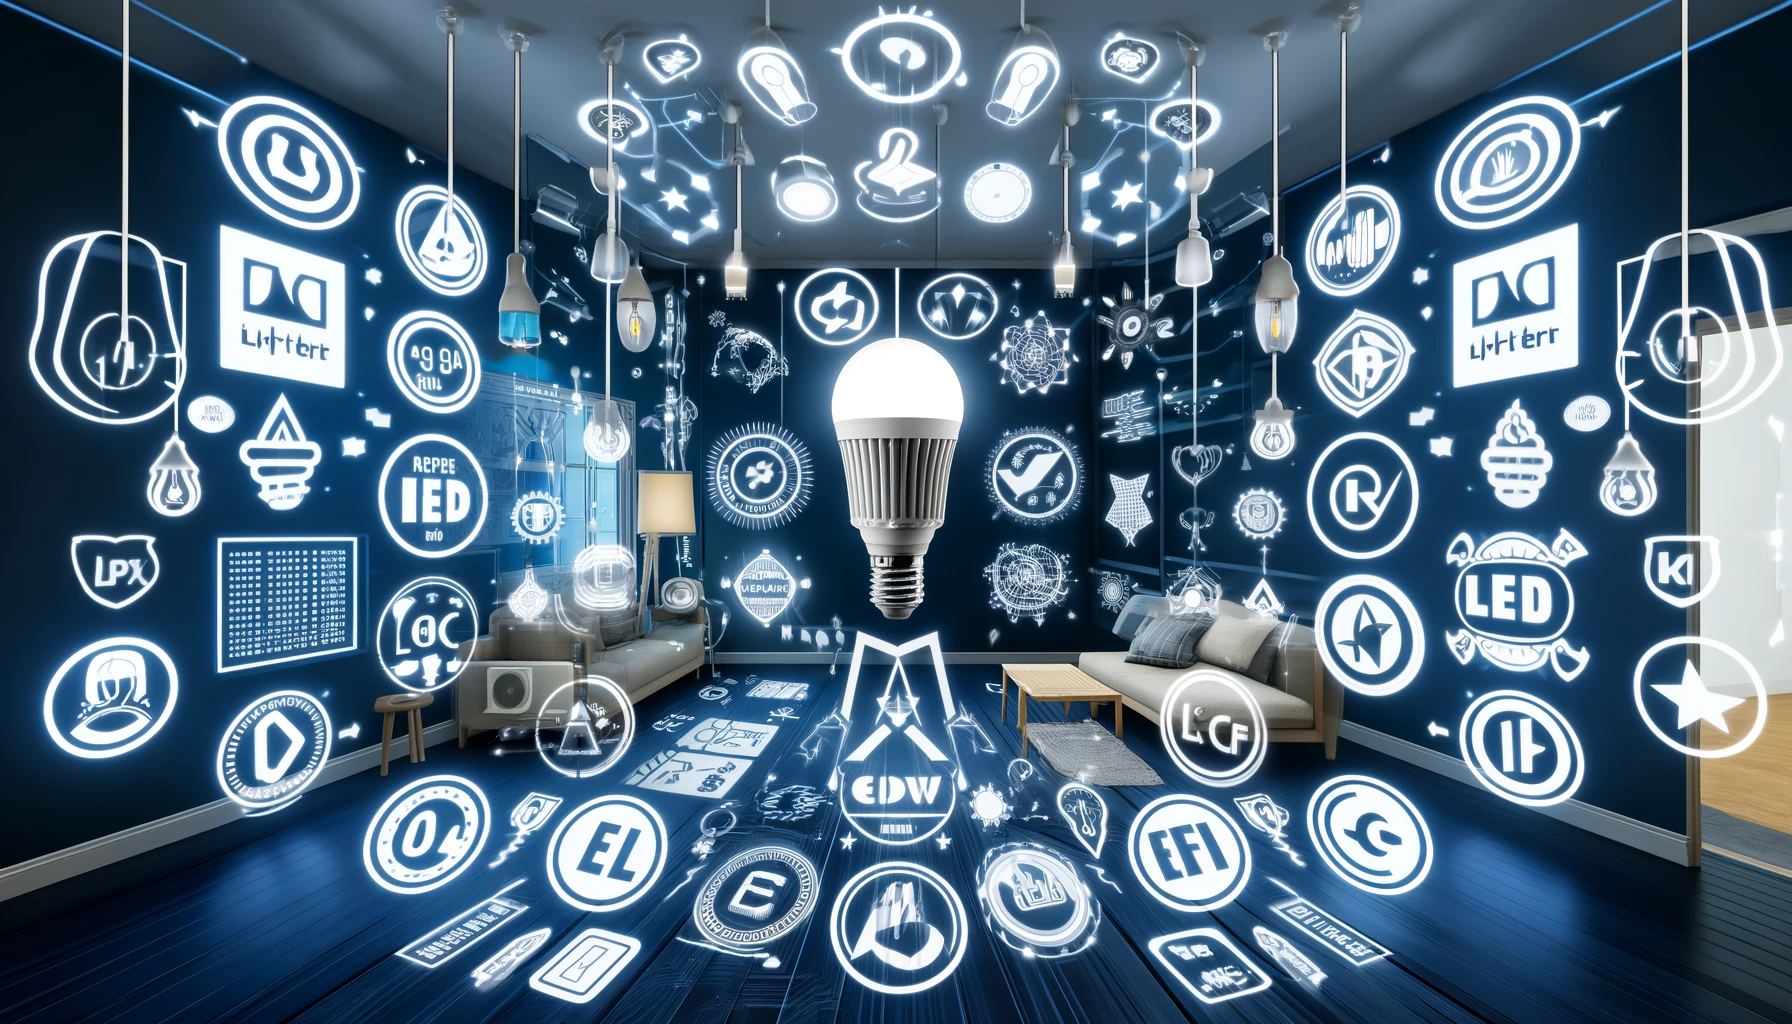 Veiligheidsnormen voor LED producten: waarborgen van kwaliteit en duurzaamheid